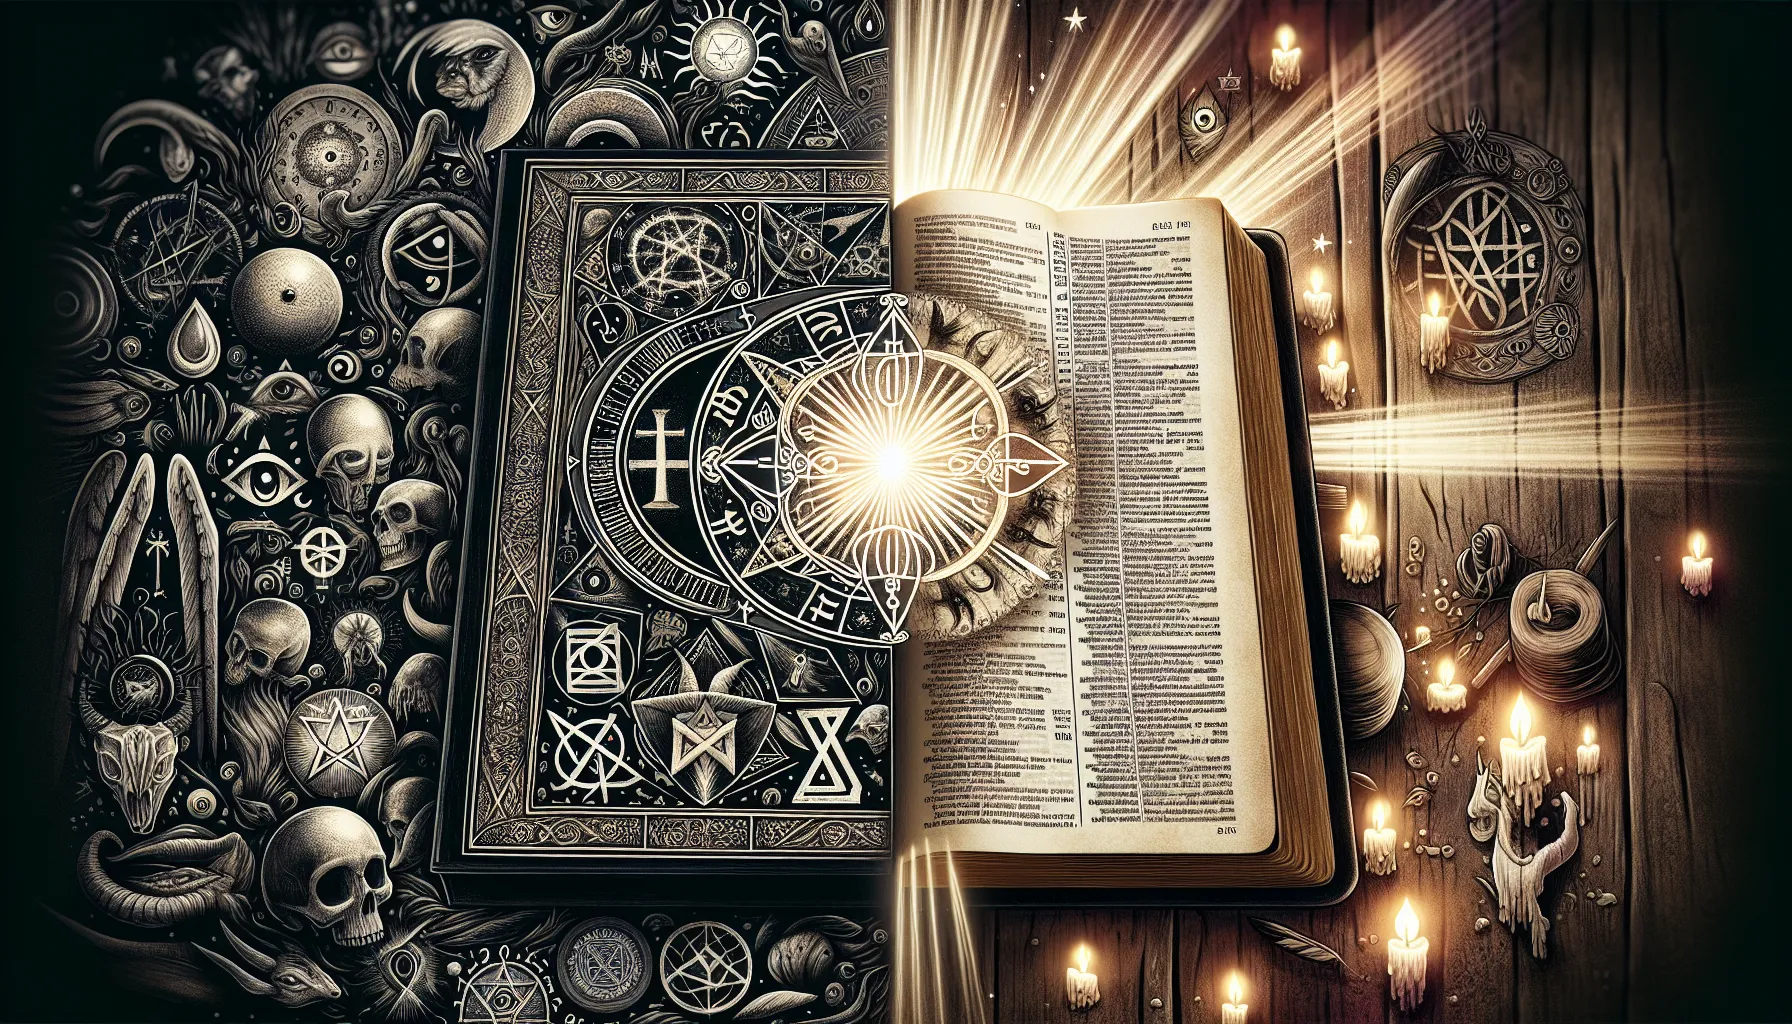 Una ilustración que representa el ocultismo rodeado de símbolos místicos